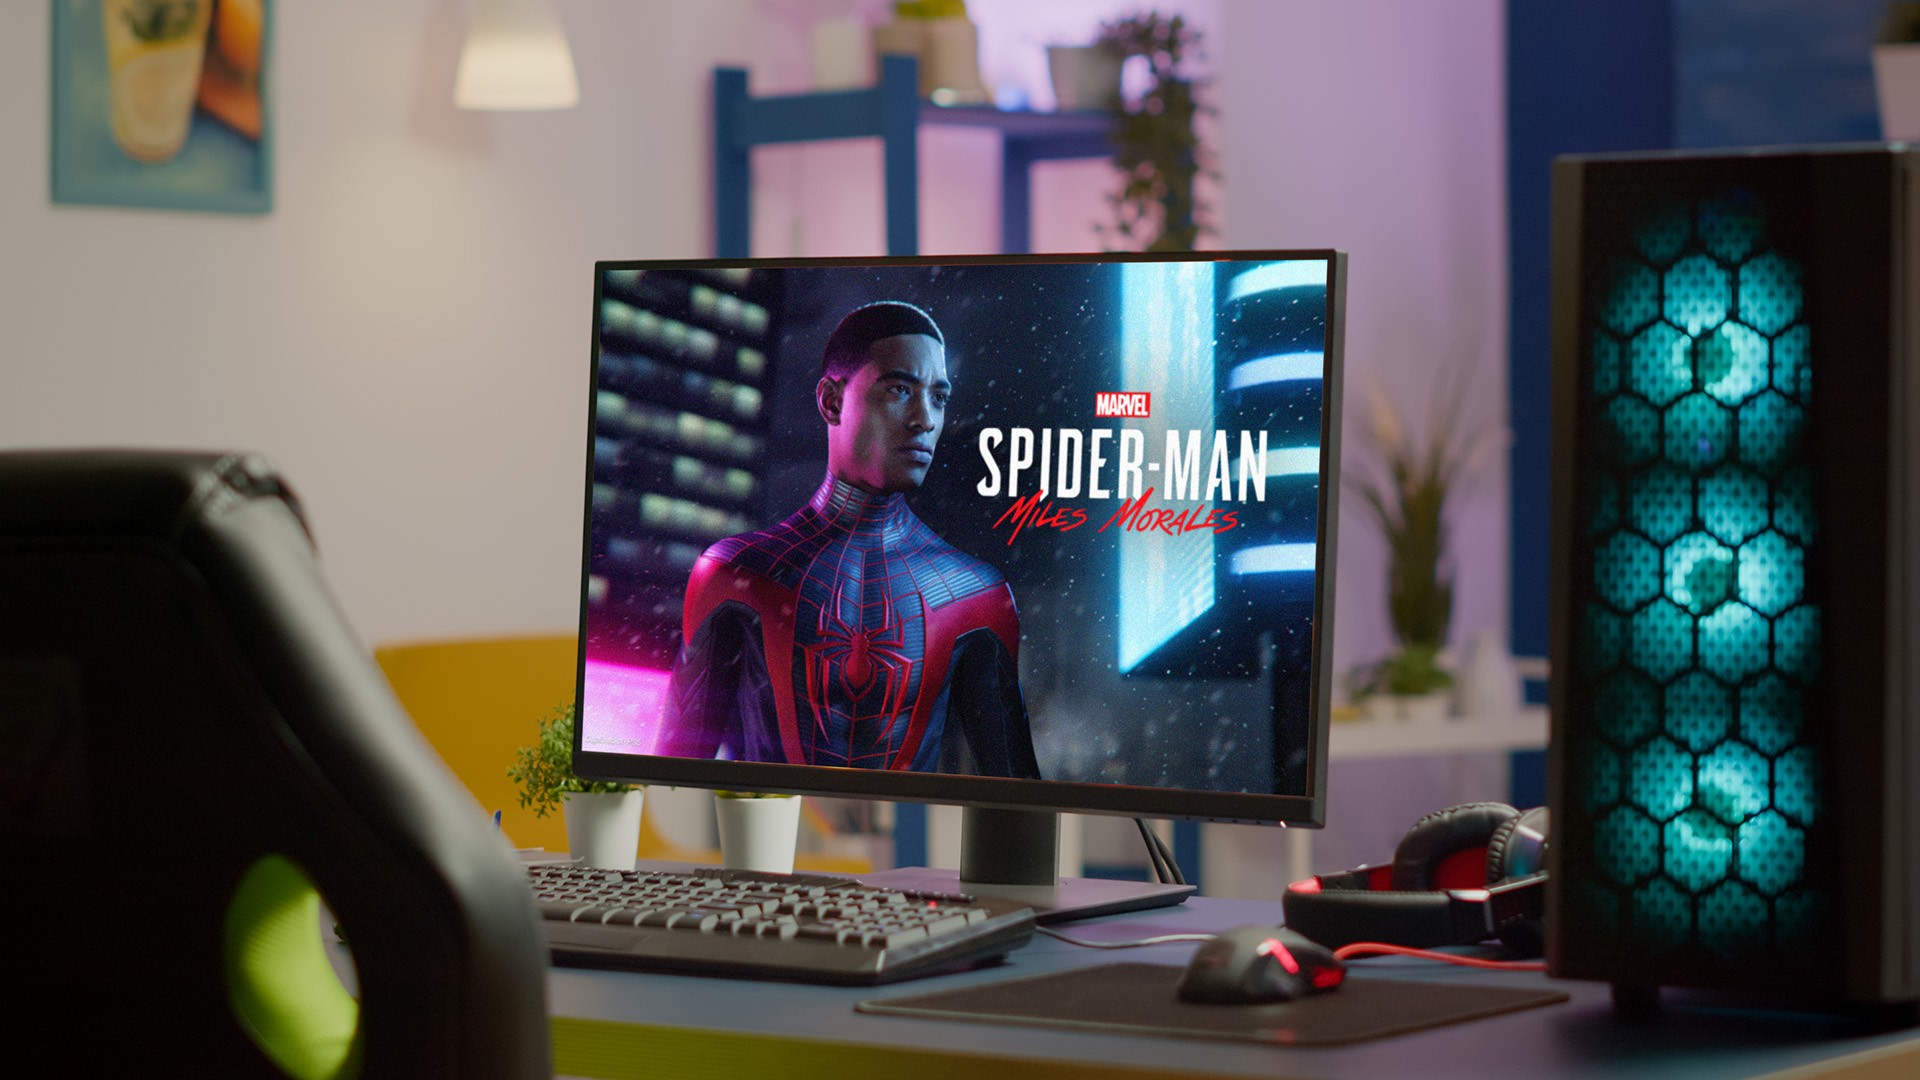 Homem-Aranha: Miles Morales chega ao PC em 18 de novembro - Jogos Grátis  Brasil